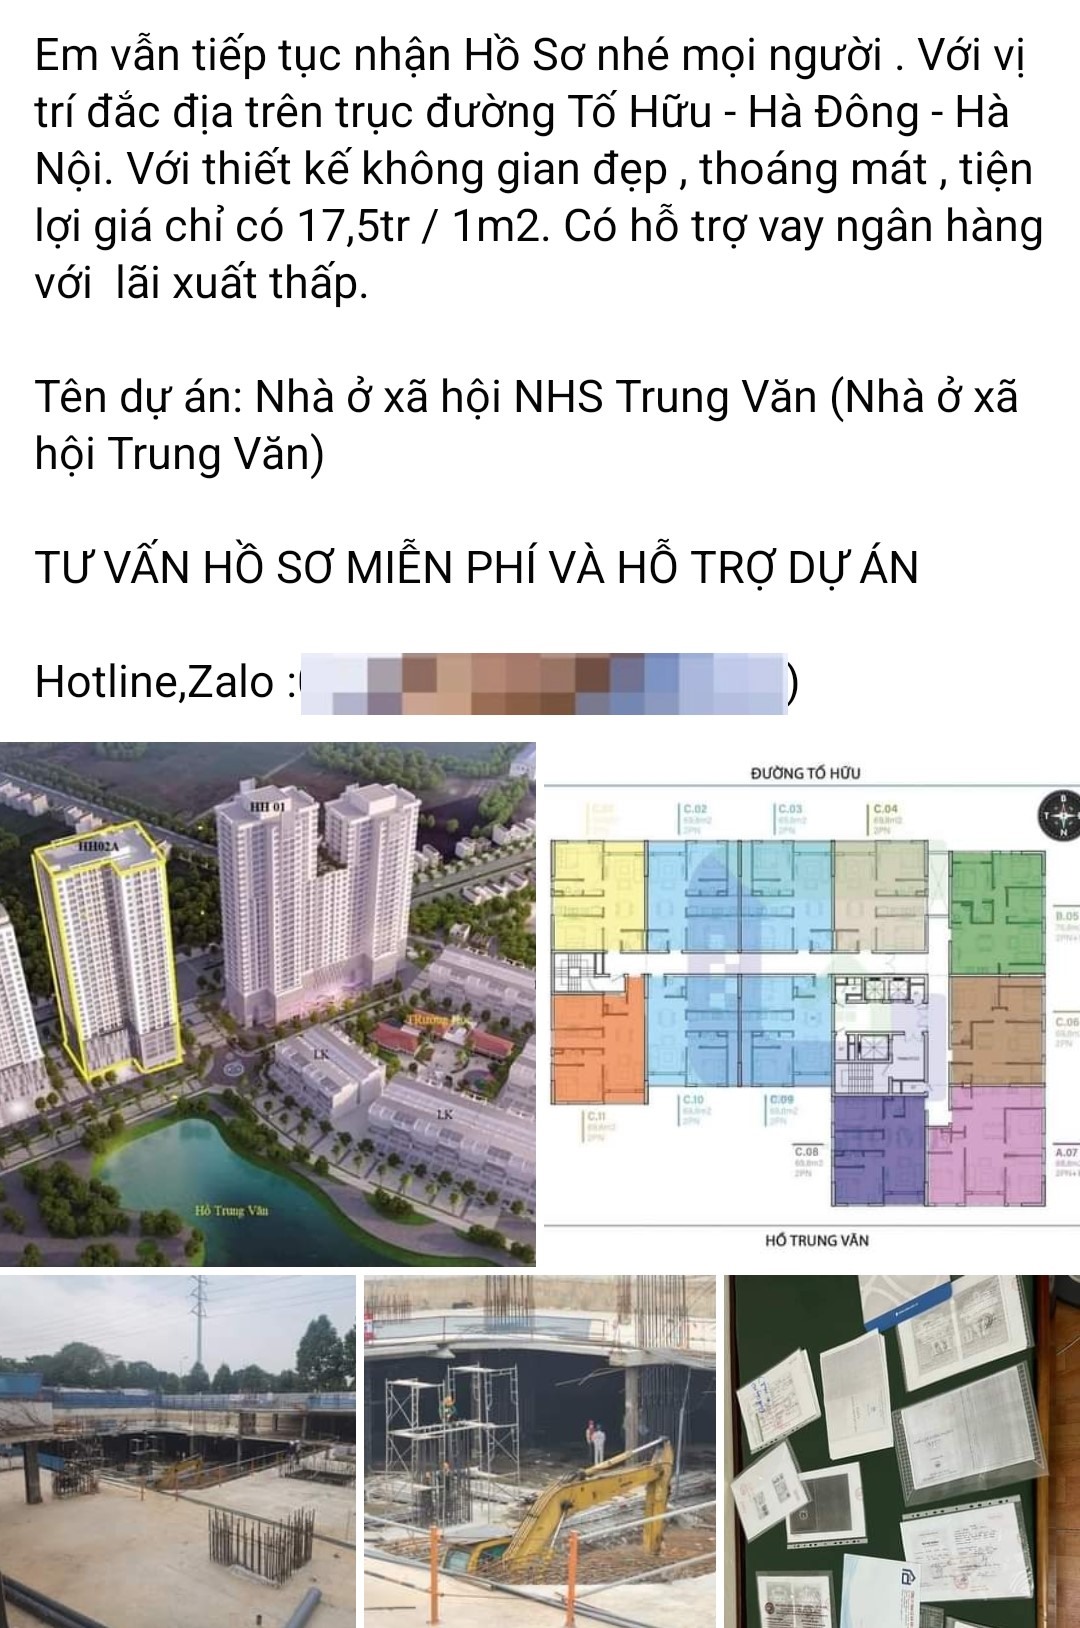 Thông tin mua bán căn hộ tại dự án NHS Trung Văn xuất hiện nhan nhản trên mạng xã hội. Ảnh: Chụp màn hình